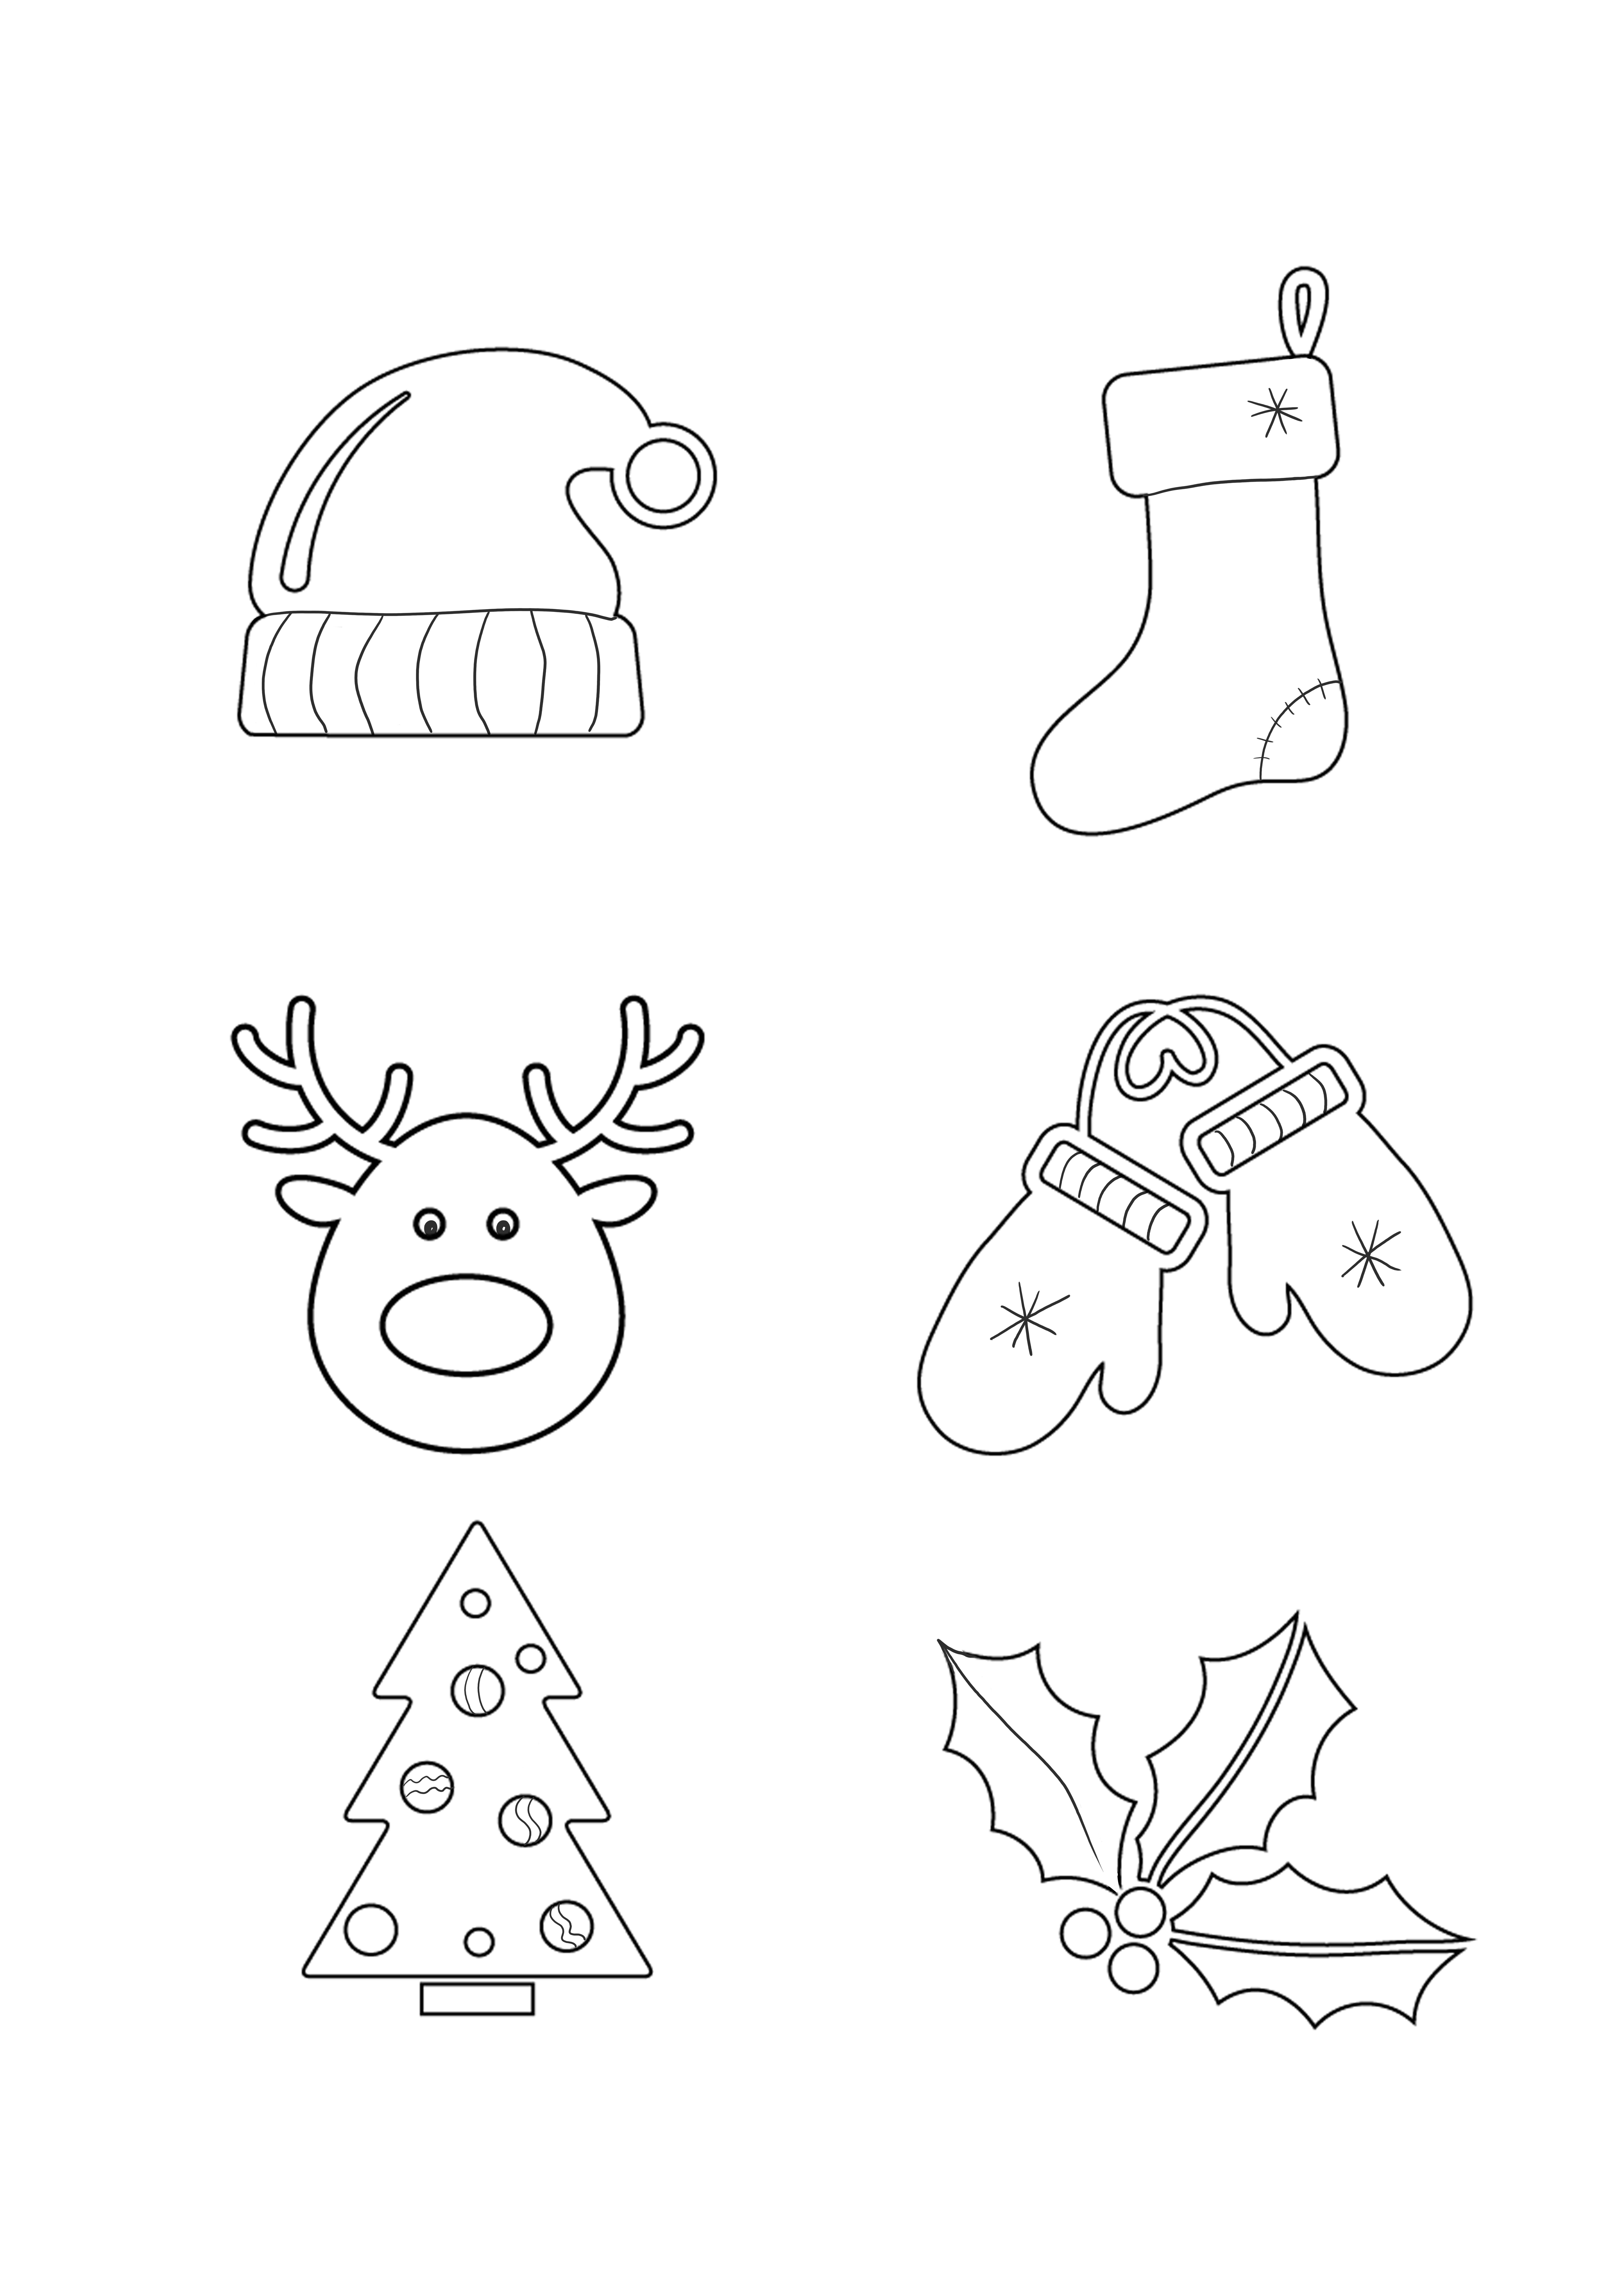 Symbole świąteczne można bezpłatnie wydrukować i pobrać lub zapisać na późniejszy arkusz